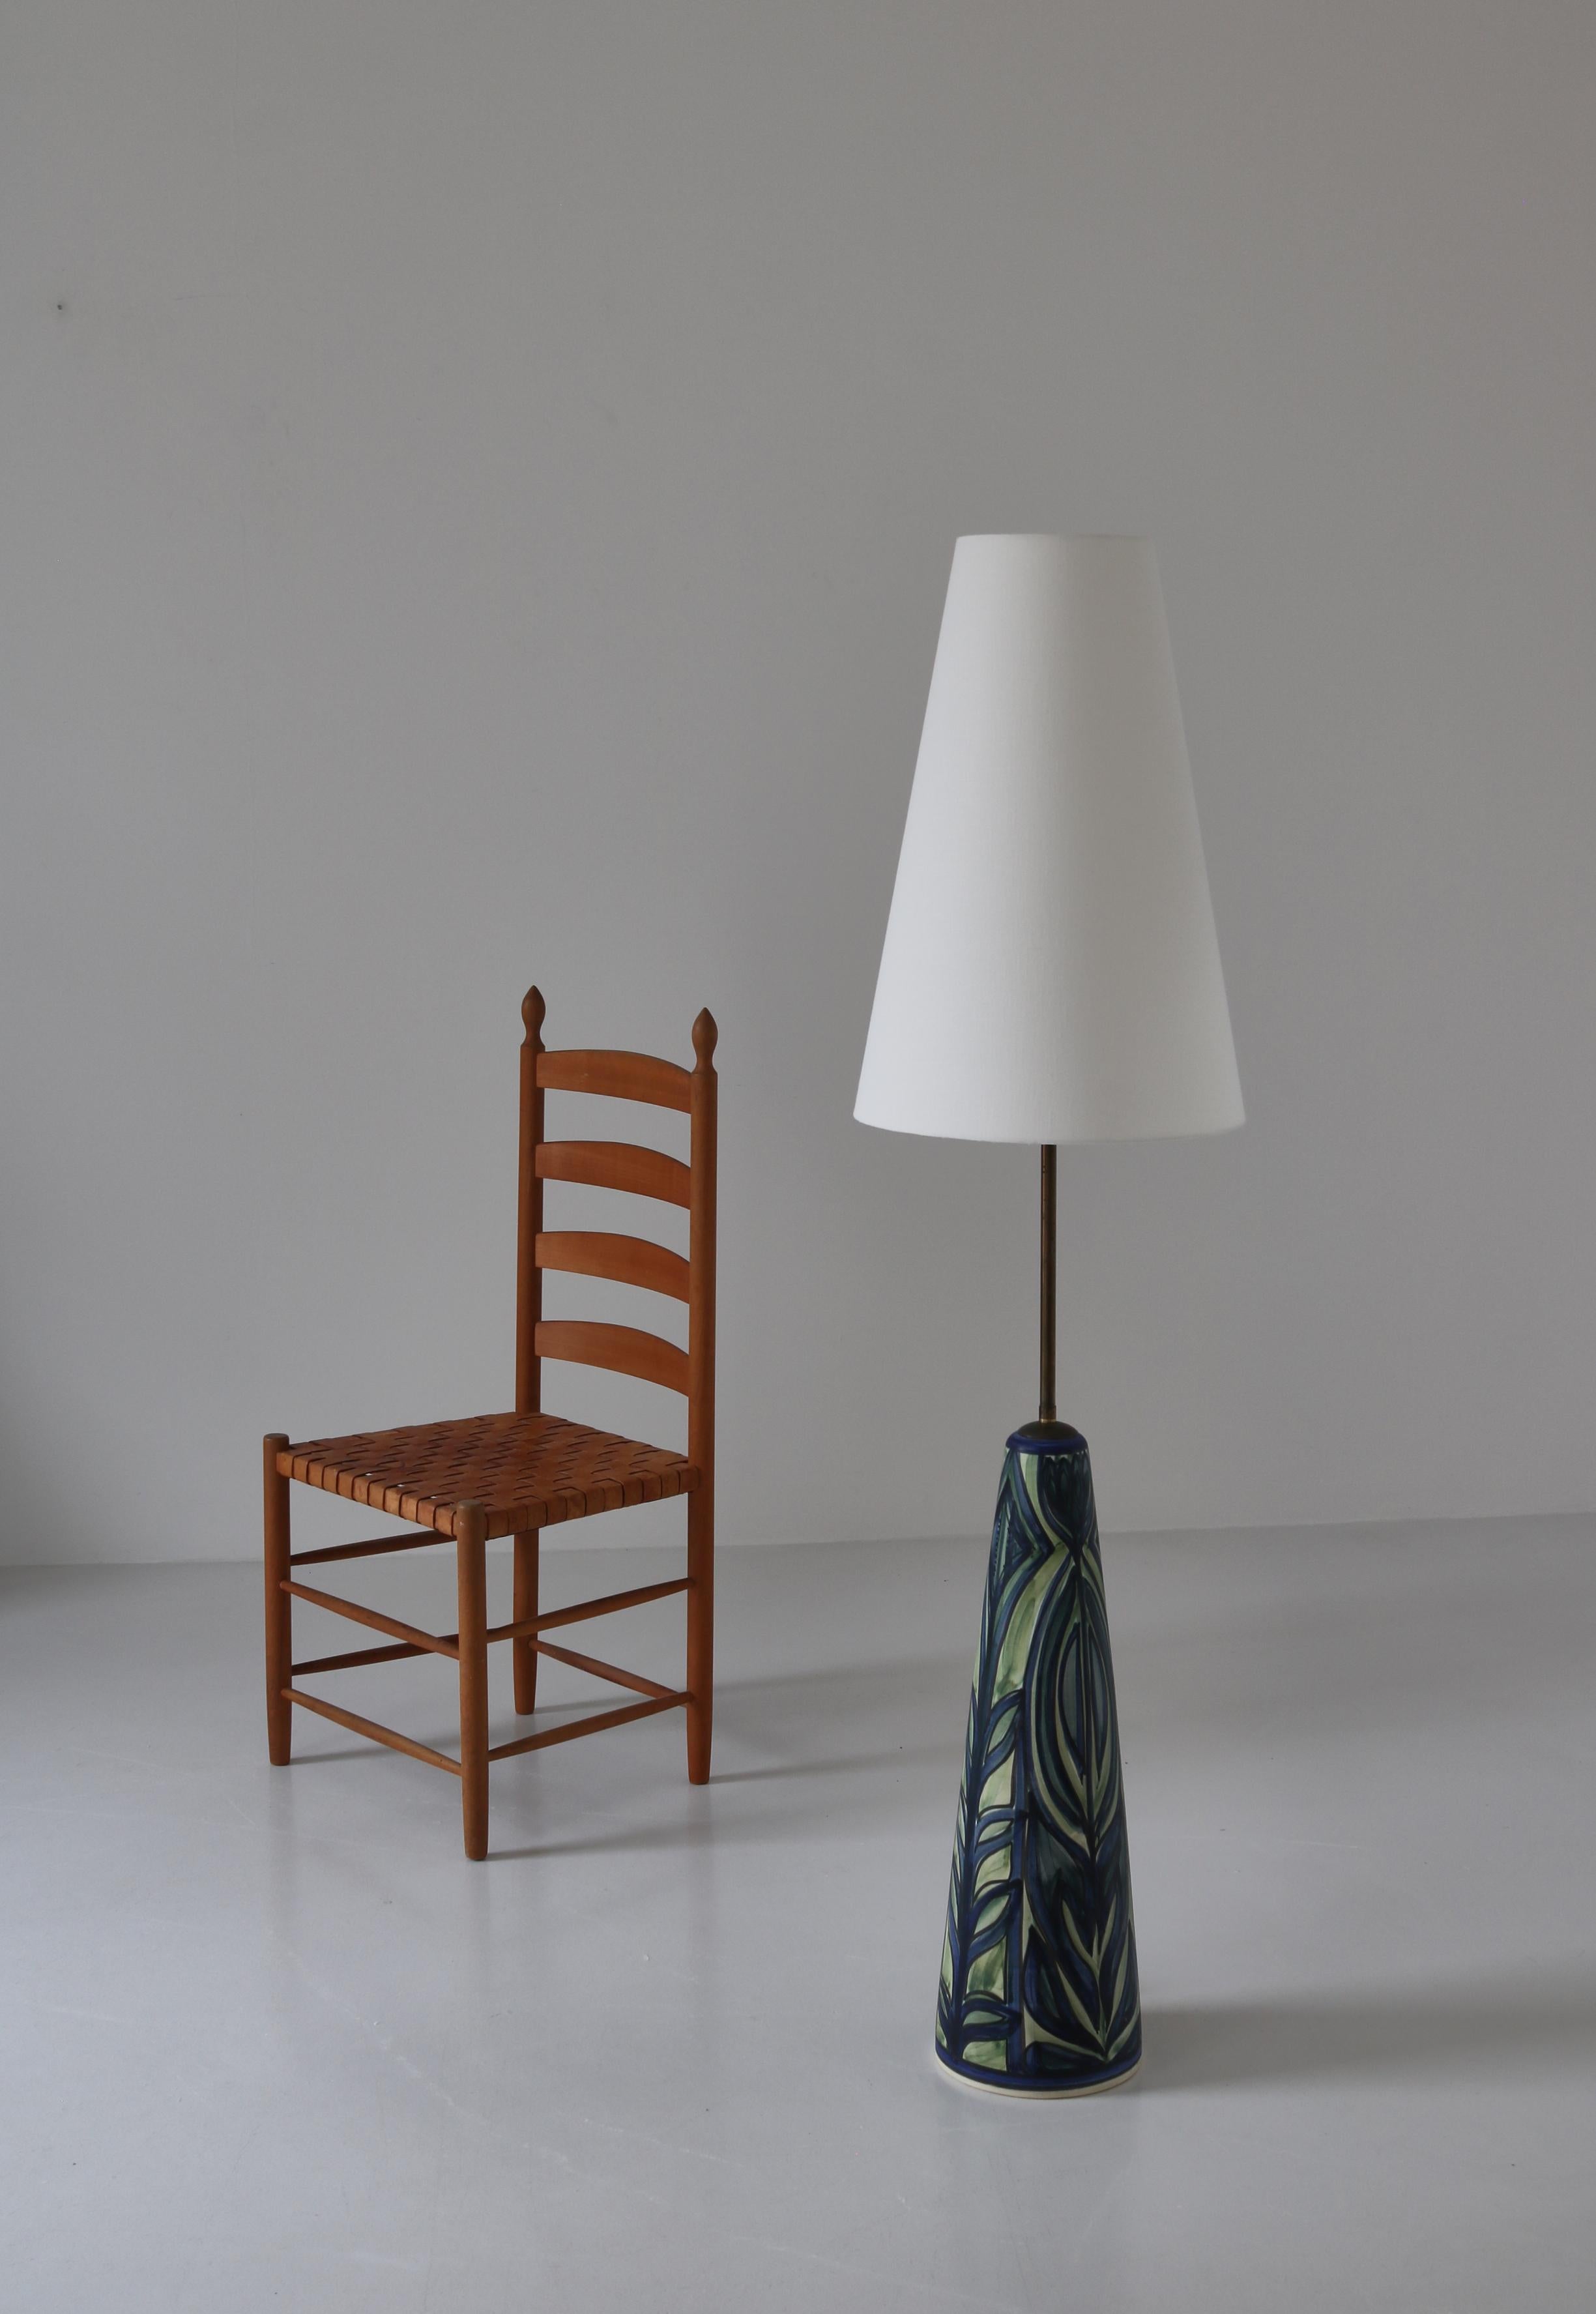 Superbe lampadaire peint à la main dans les années 1960 par l'artiste danoise Noomi Backhausen à l'atelier de céramique Søholm, Bornholm. Le motif abstrait dans les tons de bleu et de vert de cette lampe est tout simplement étonnant et ne se trouve